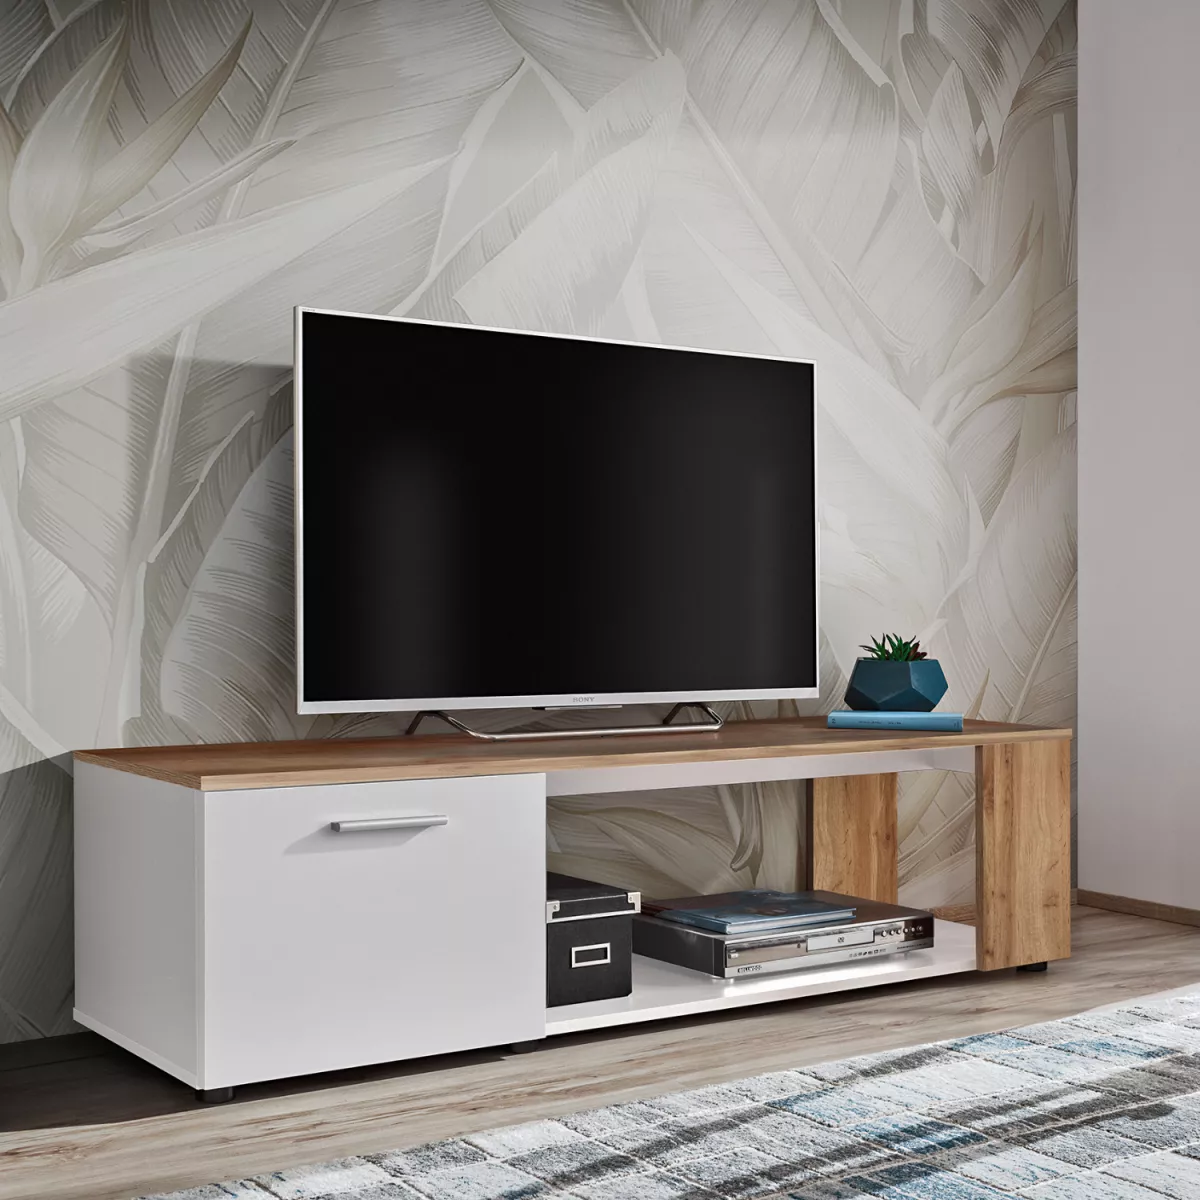 #1 - Smukt TV-møbel i minimalistisk stil, fås i 2 farvekombinationer